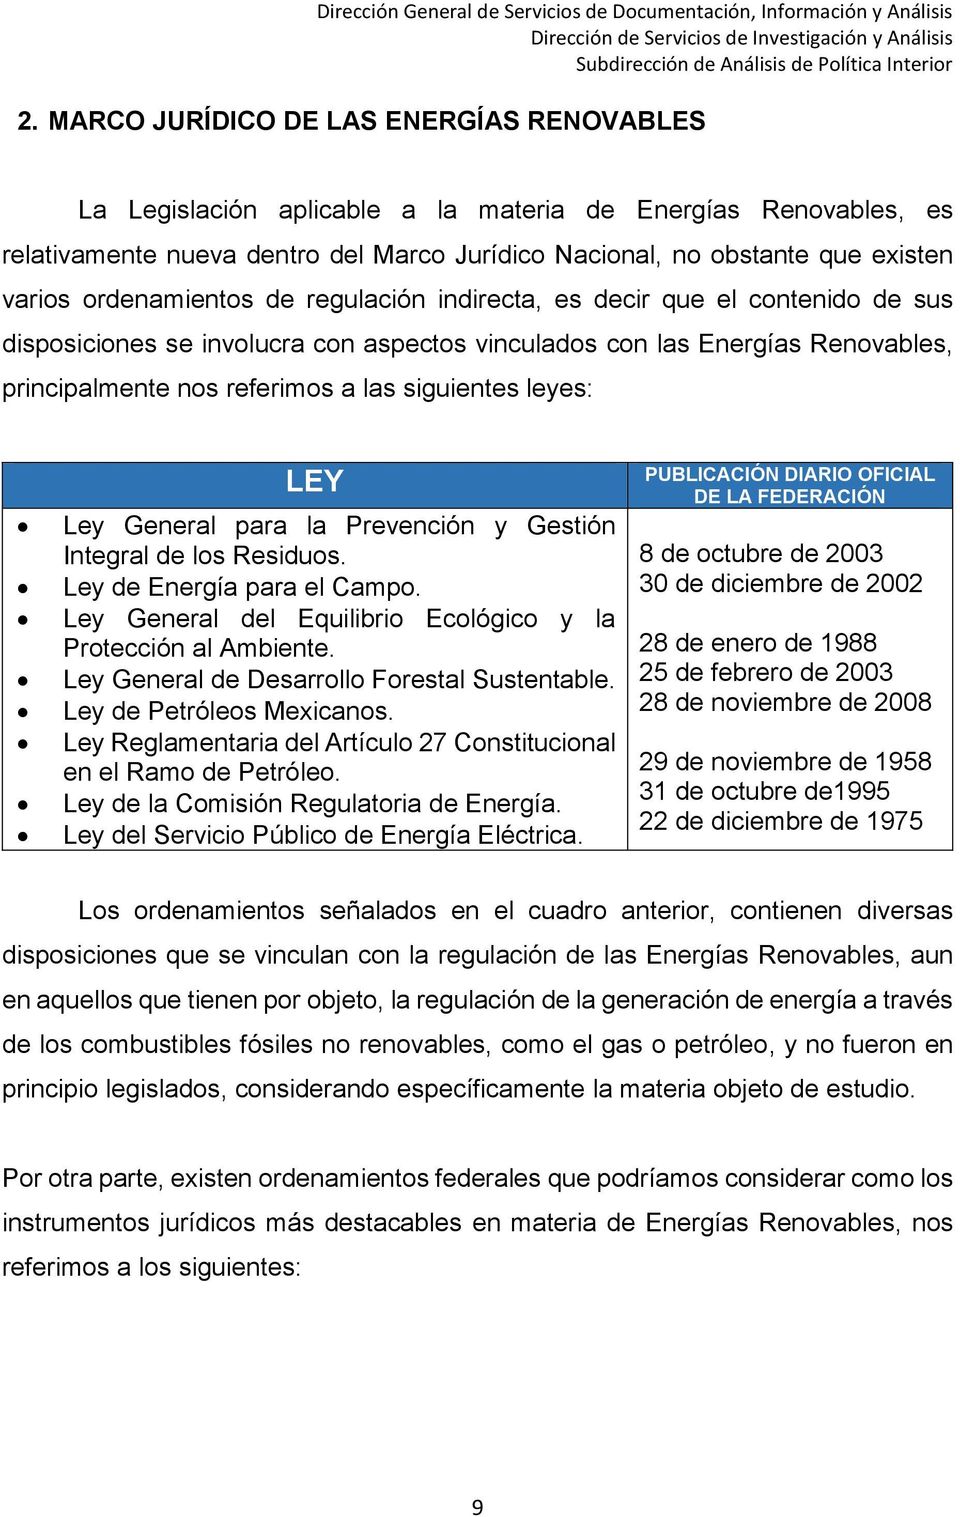 leyes: LEY Ley General para la Prevención y Gestión Integral de los Residuos. Ley de Energía para el Campo. Ley General del Equilibrio Ecológico y la Protección al Ambiente.